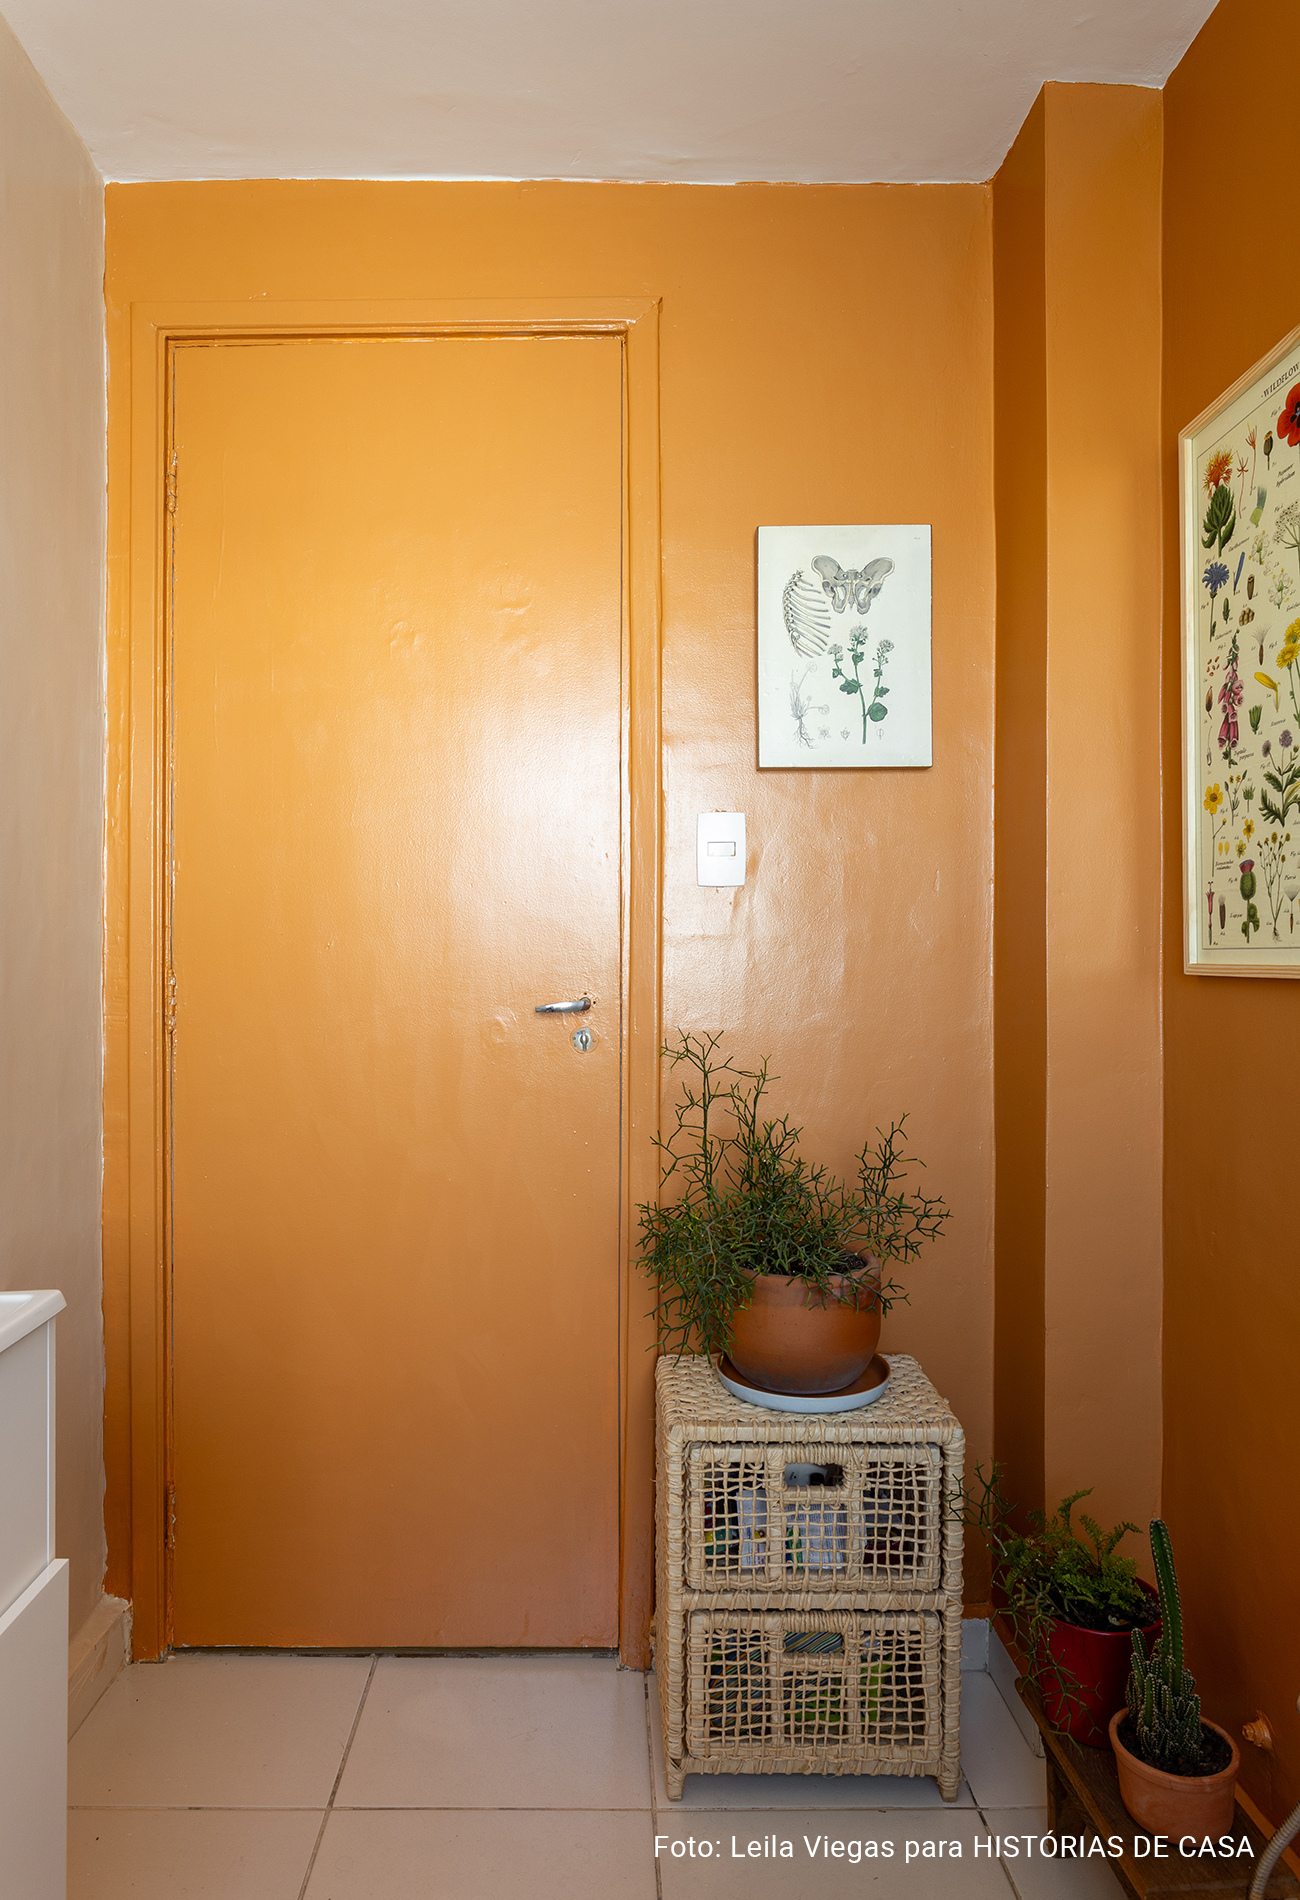 Sala de estar com paredes coloridas e decoração acolhedora